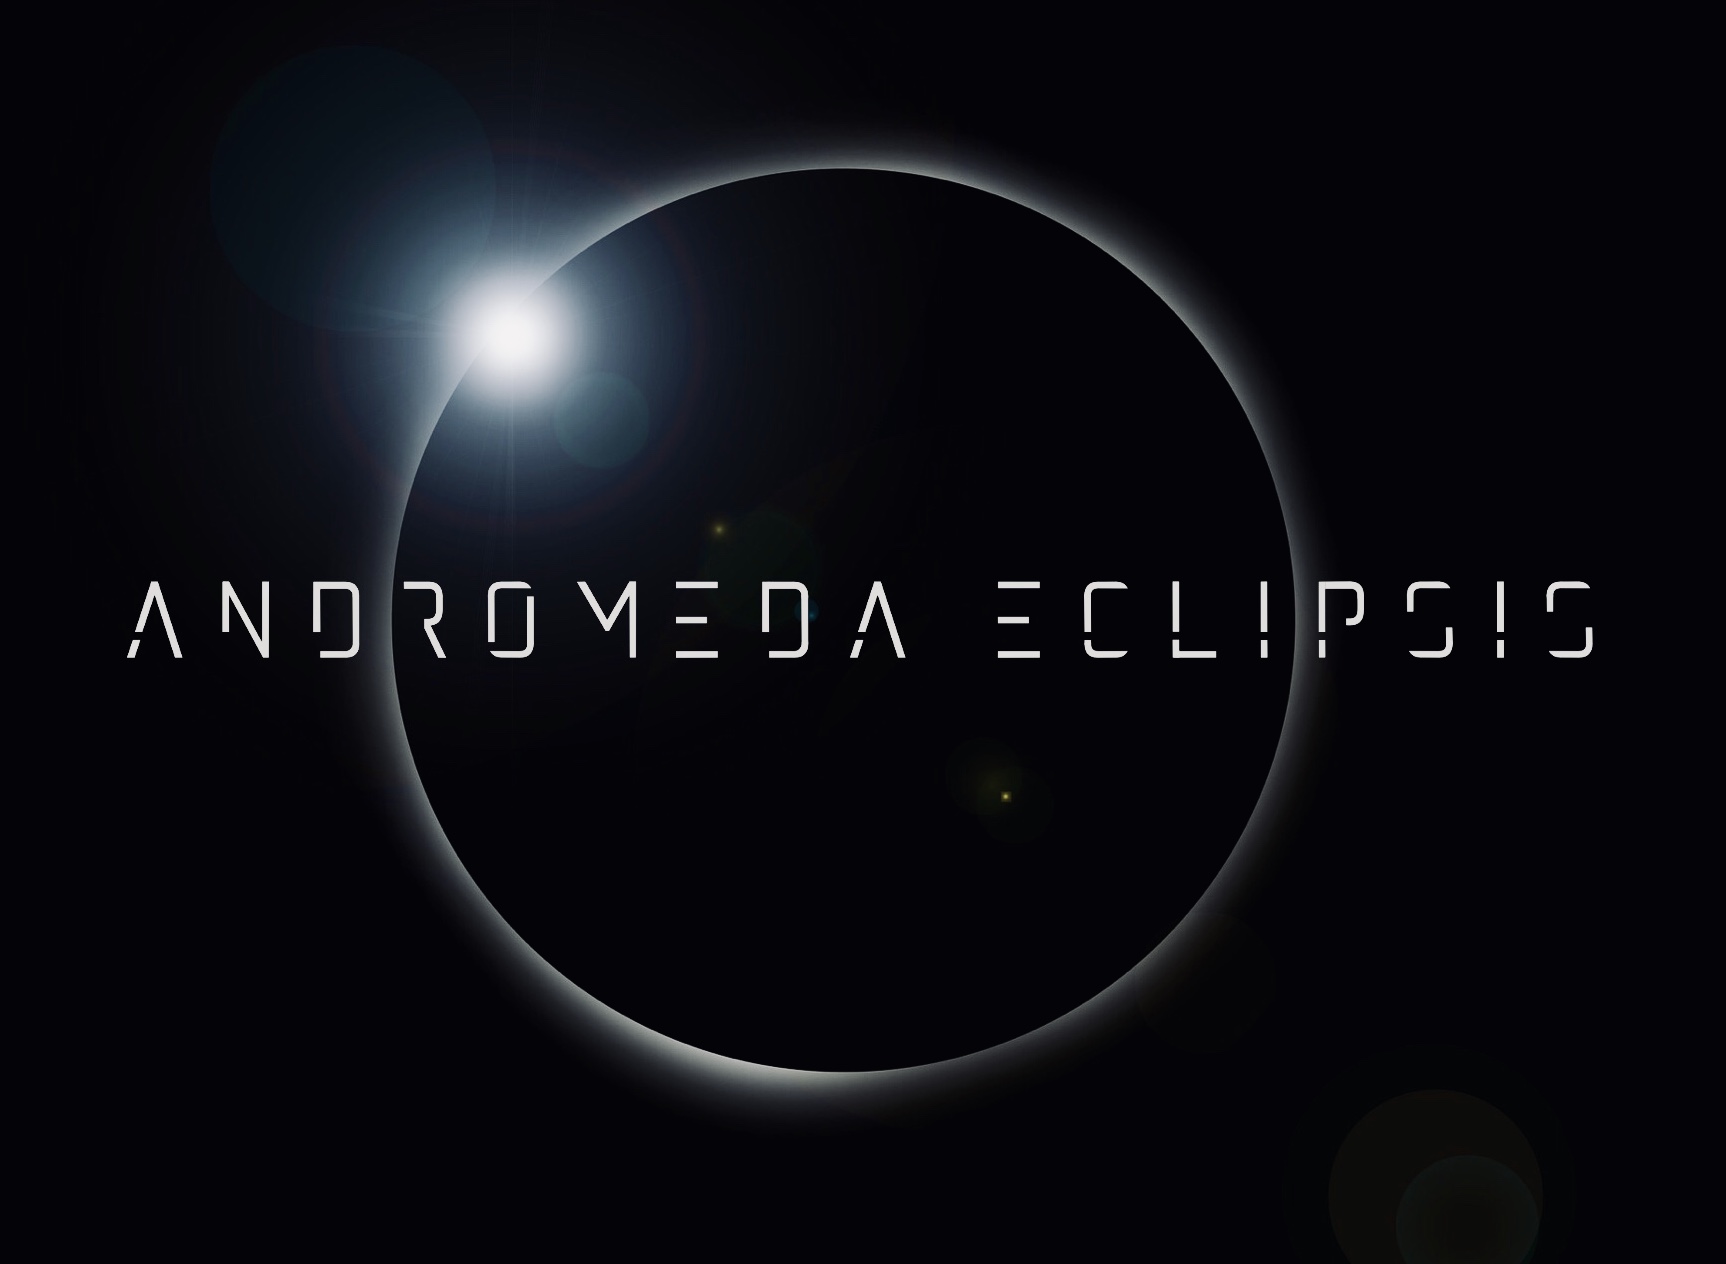 Andromedaeclipsis